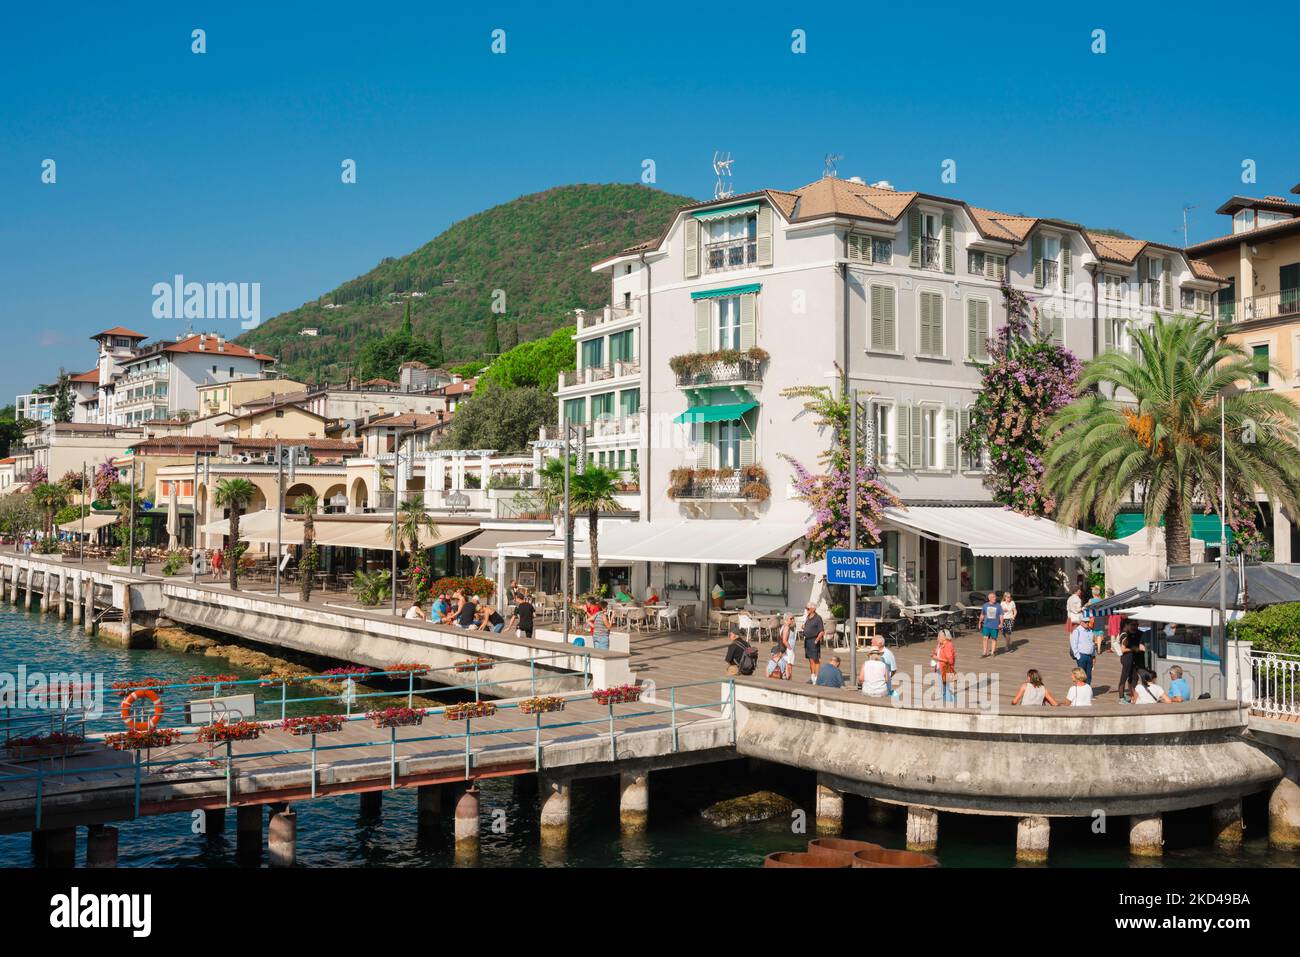 Gardone Riviera Italia, vista en verano del embarcadero del ferry y el paseo - el Lungolargo Gabriele D'Annunzio, Gardone Riviera, Lago de Garda, Lombardía Foto de stock